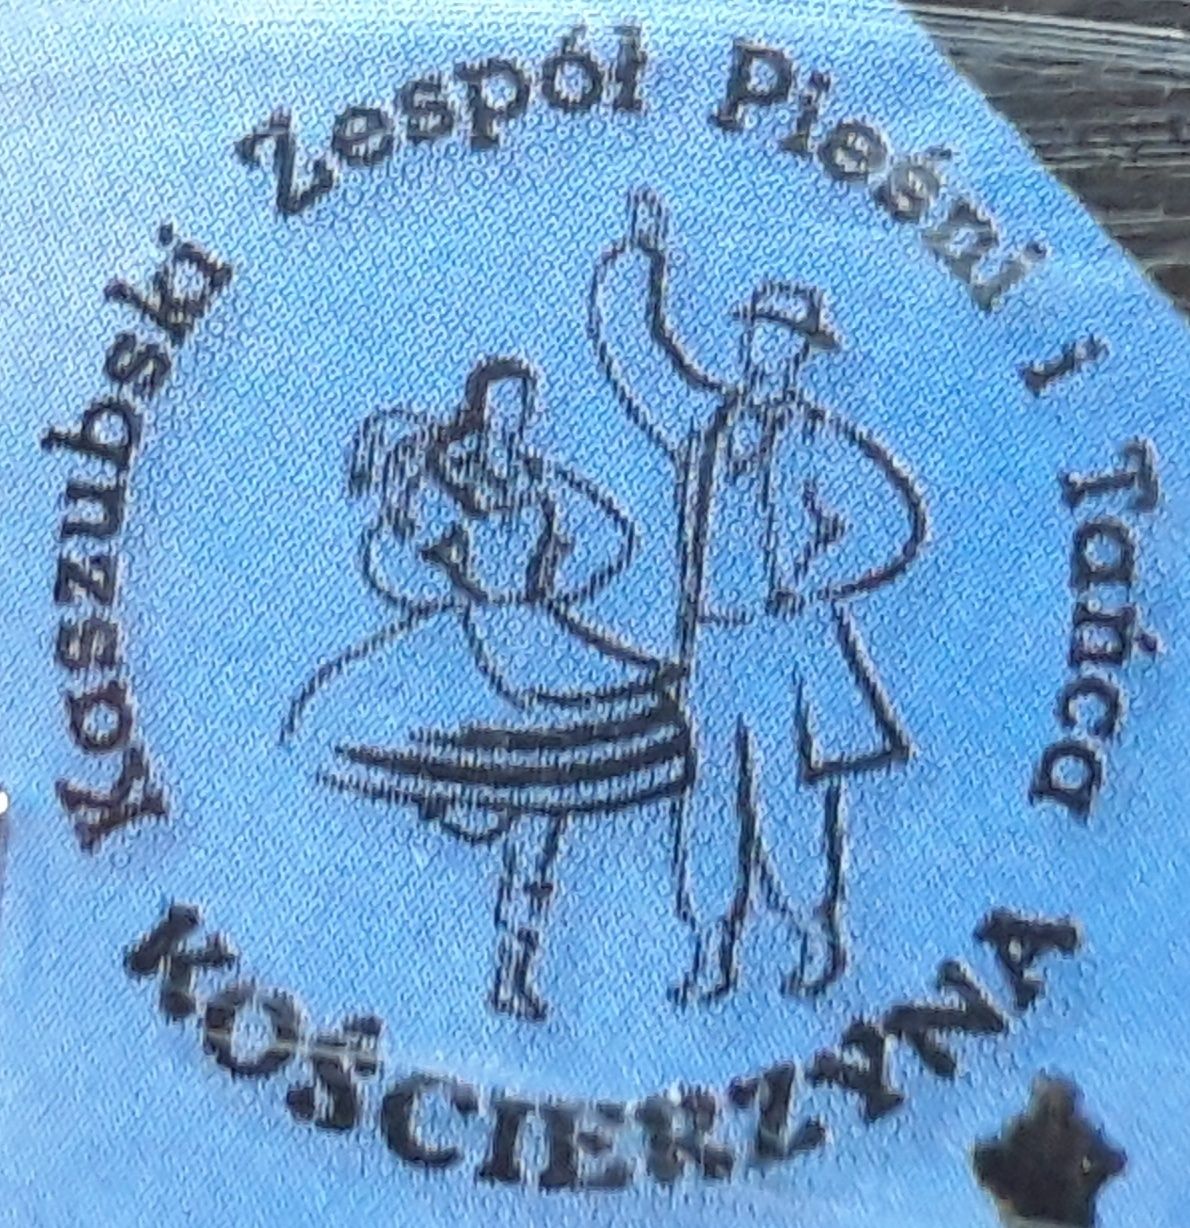 Zespół Pieśni I Tańca Kościerzyna - Kaszëbë Wòłają Nas (CD, 2004?)